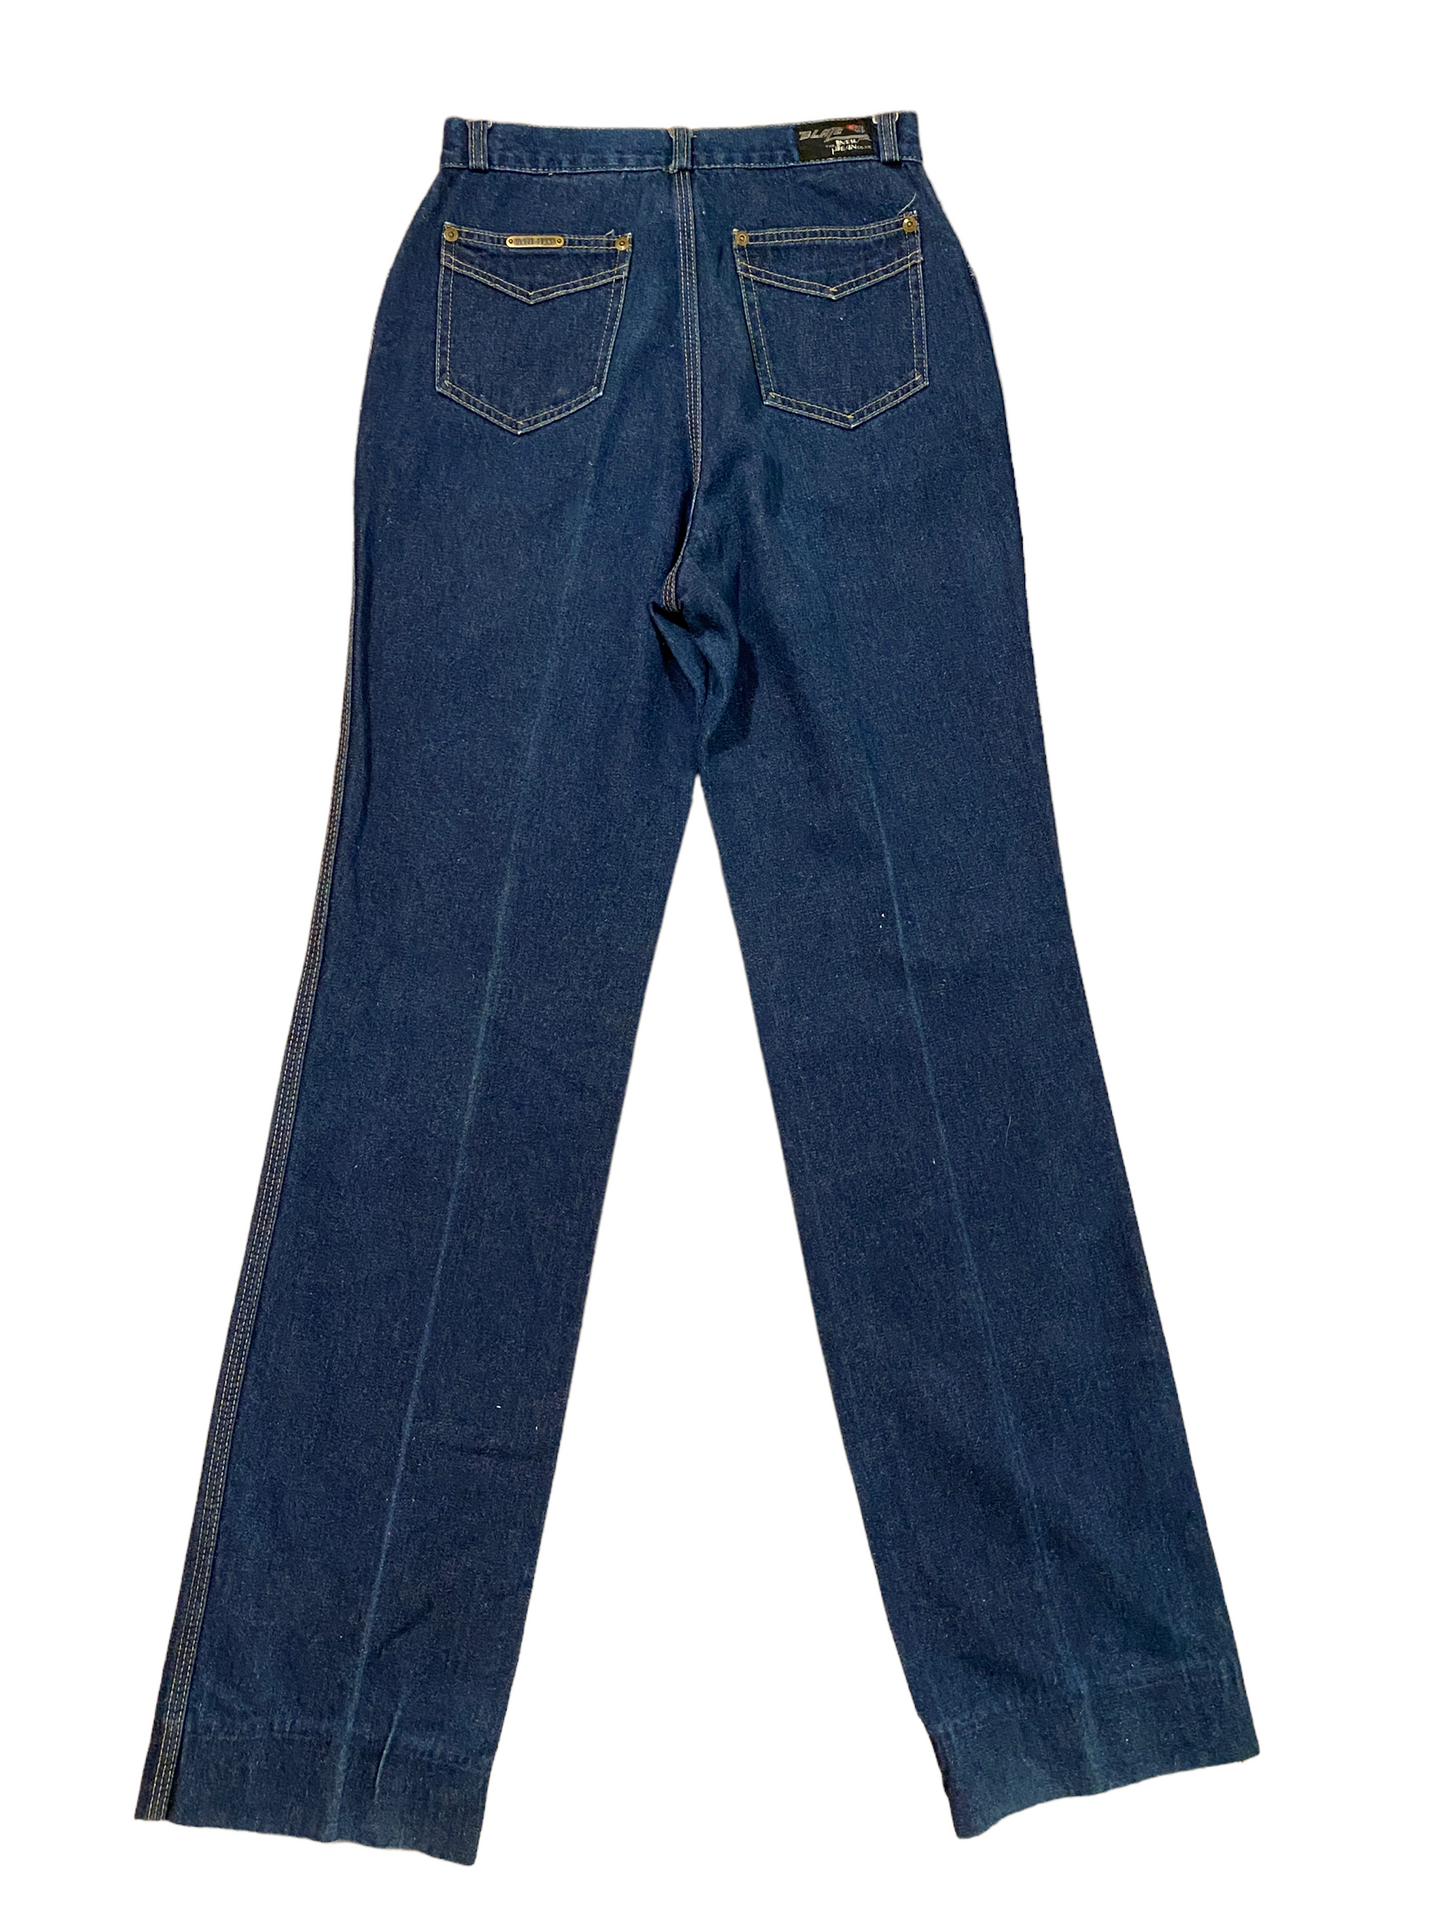 1980s Vintage Blaze Jeans High Waist Denim